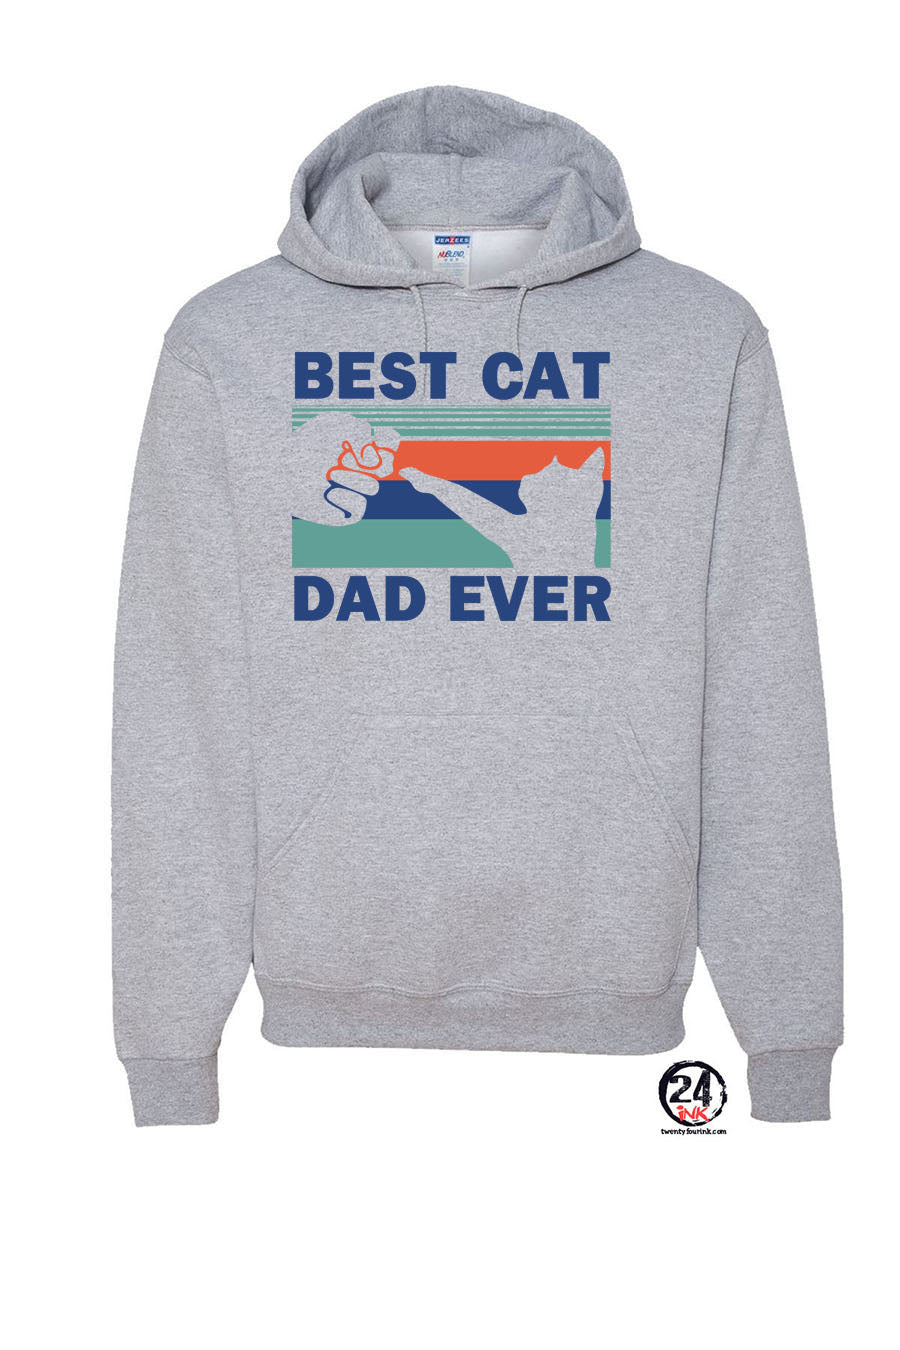 Best cat dad ever Hooded Sweatshirt